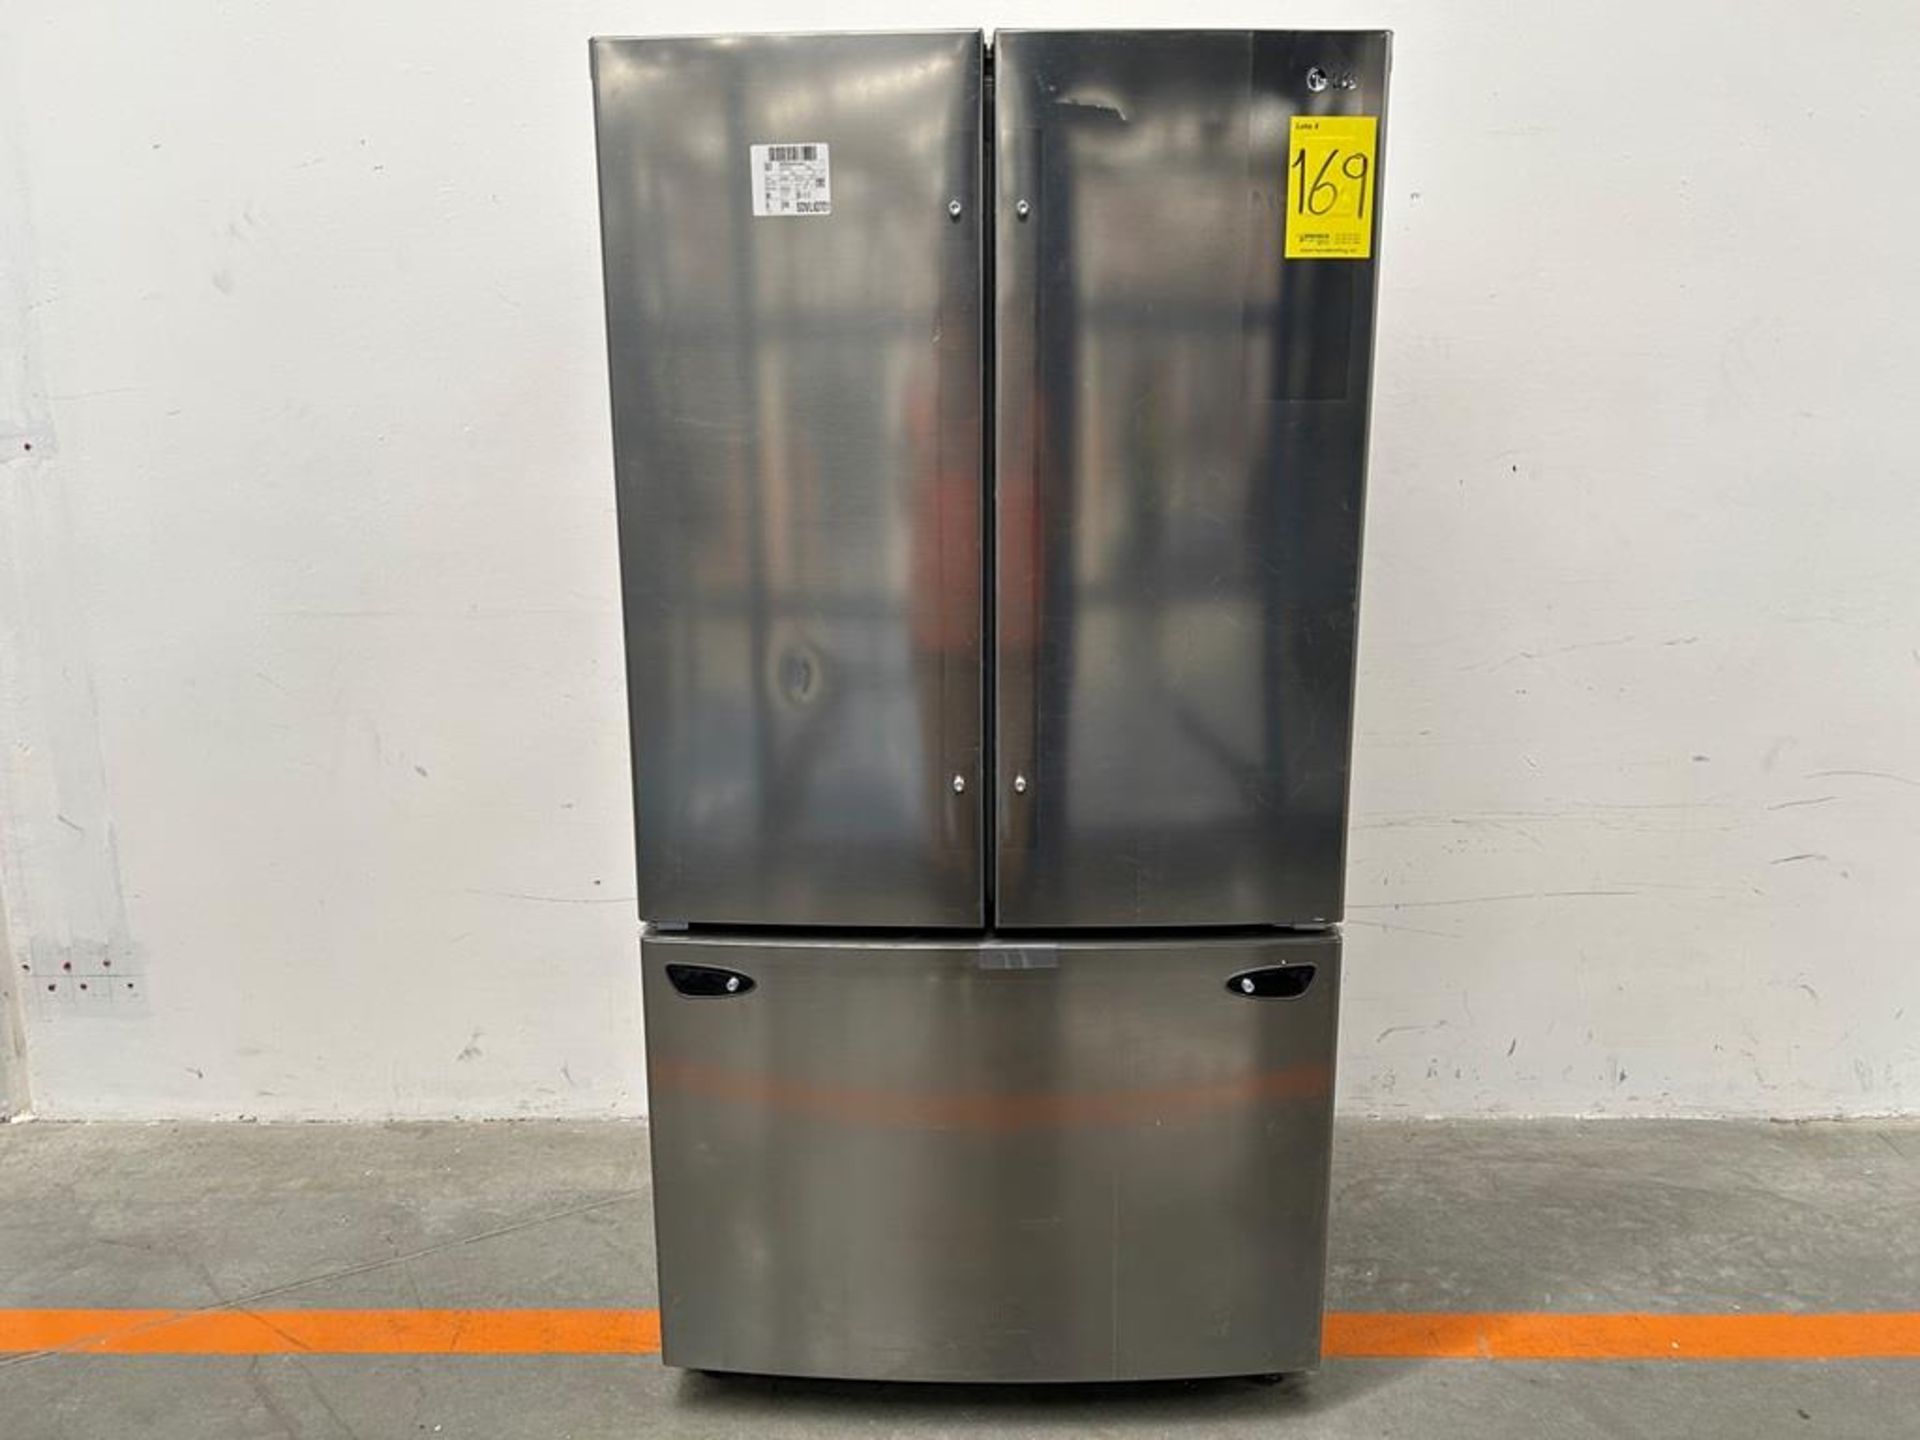 (NUEVO) Refrigerador Marca LG, Modelo GM20BIP, Serie ULY188, Color GRIS (golpe ligero frontal)